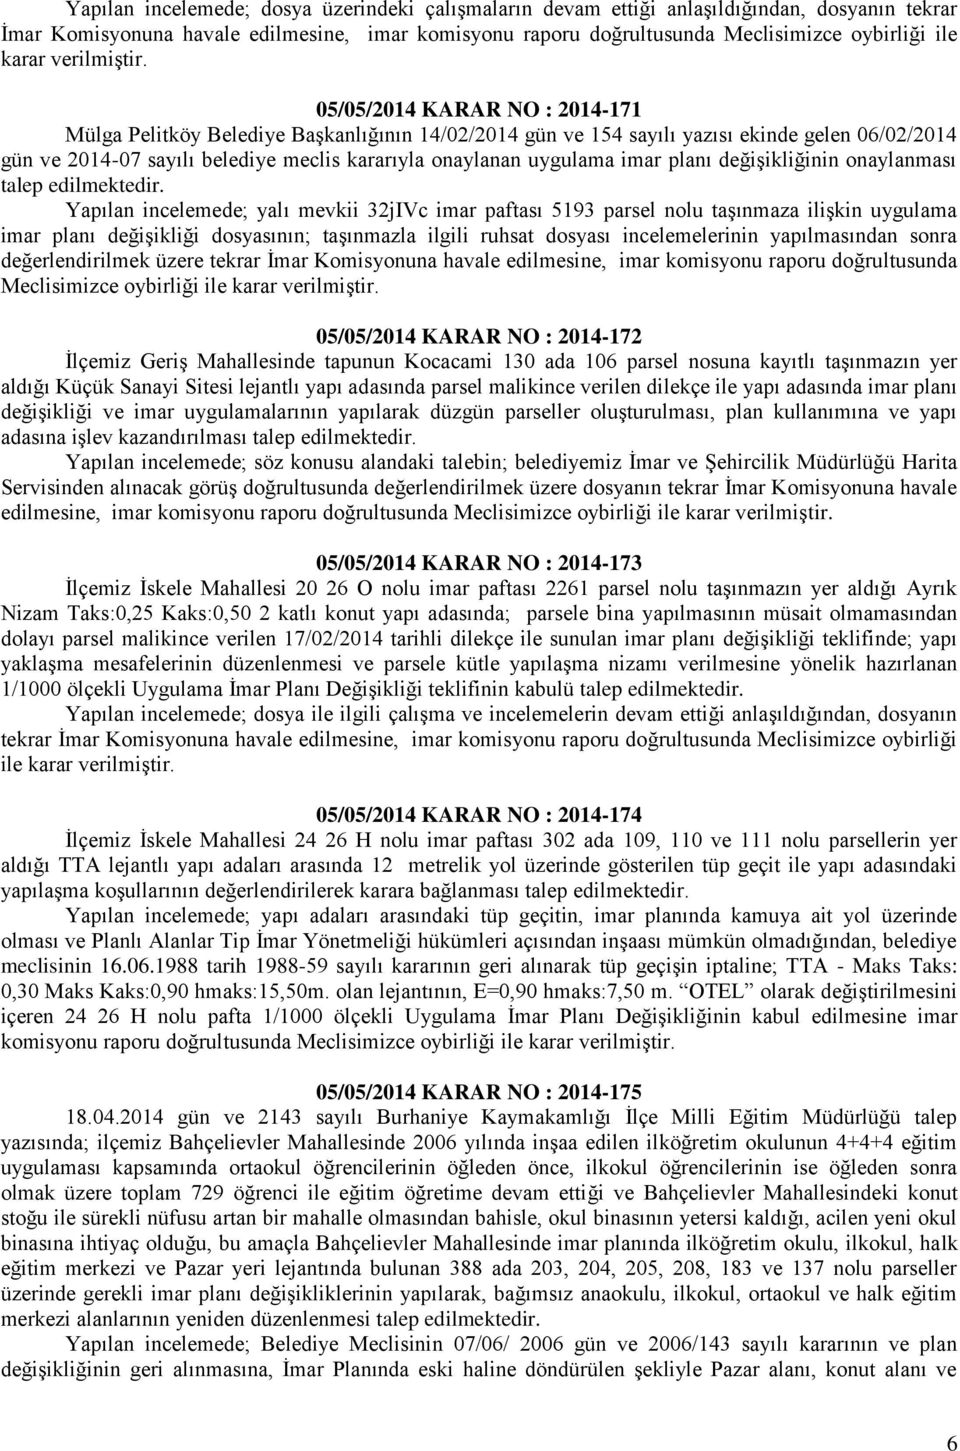 05/05/04 KARAR NO : 04-7 Mülga Pelitköy Belediye Başkanlığının 4/0/04 gün ve 54 sayılı yazısı ekinde gelen 06/0/04 gün ve 04-07 sayılı belediye meclis kararıyla onaylanan uygulama imar planı